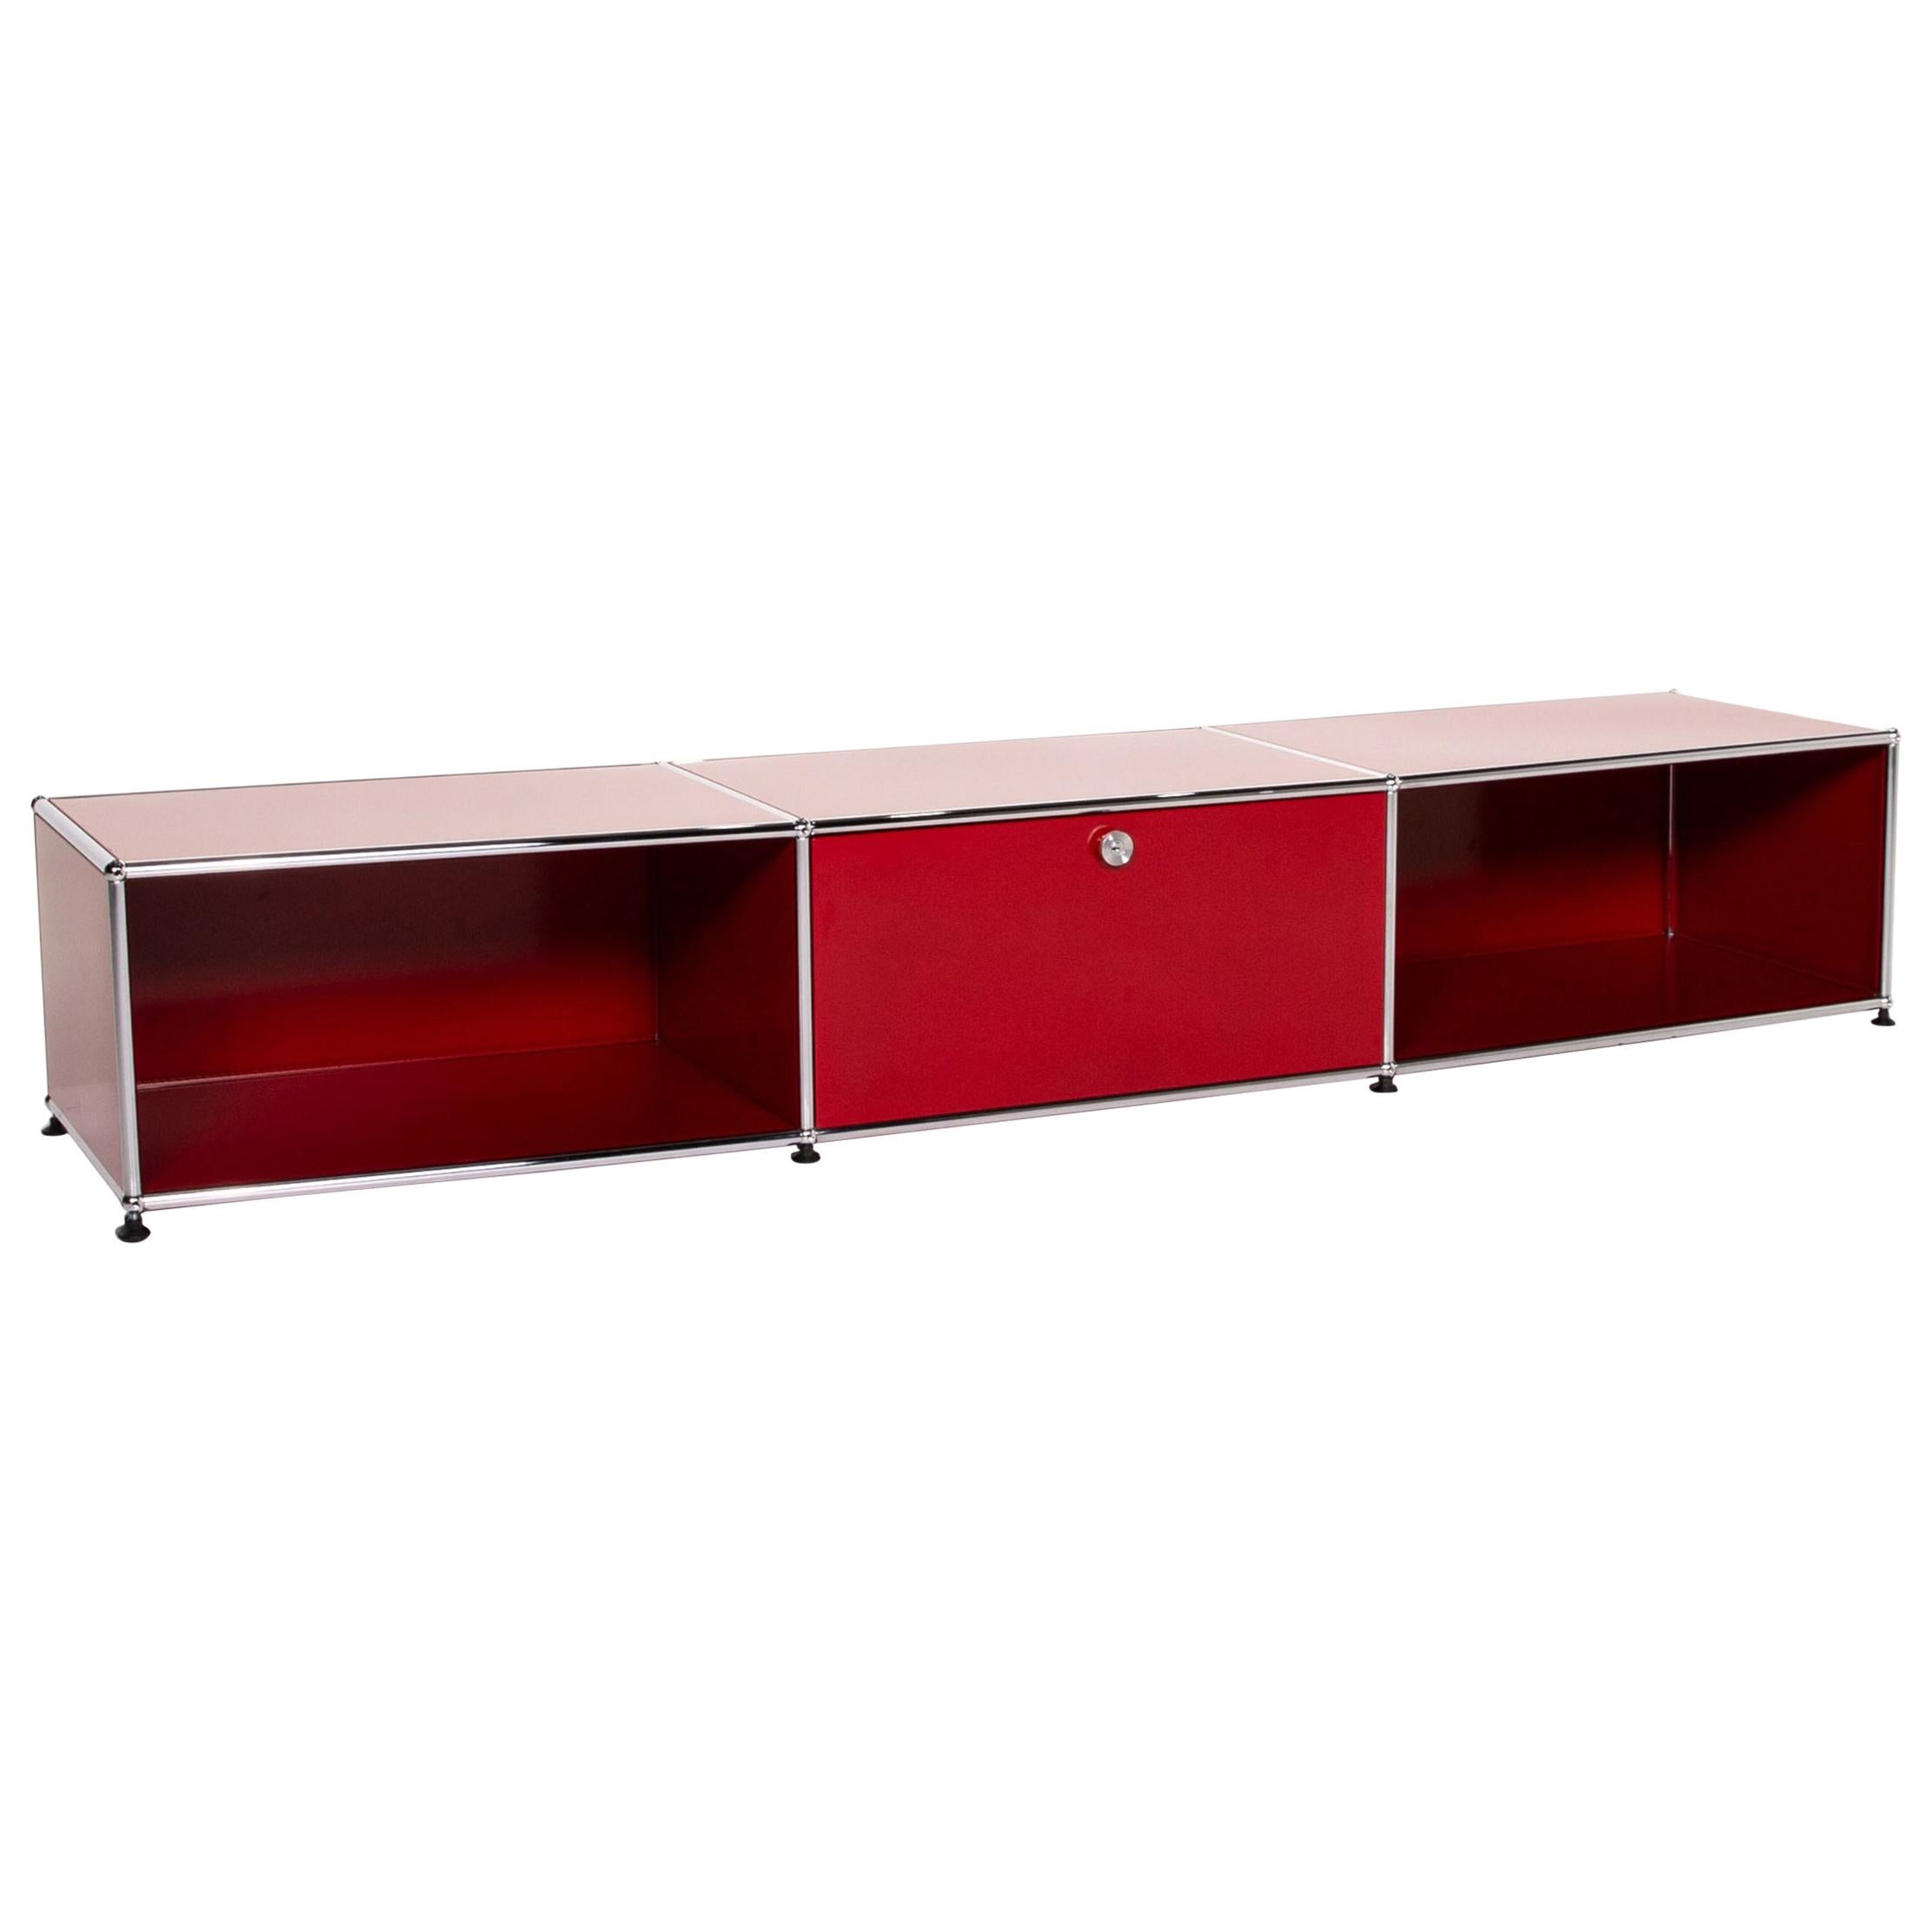 USM Haller Metal Lowboard Red Sideboard TV Board Office Furniture For Sale